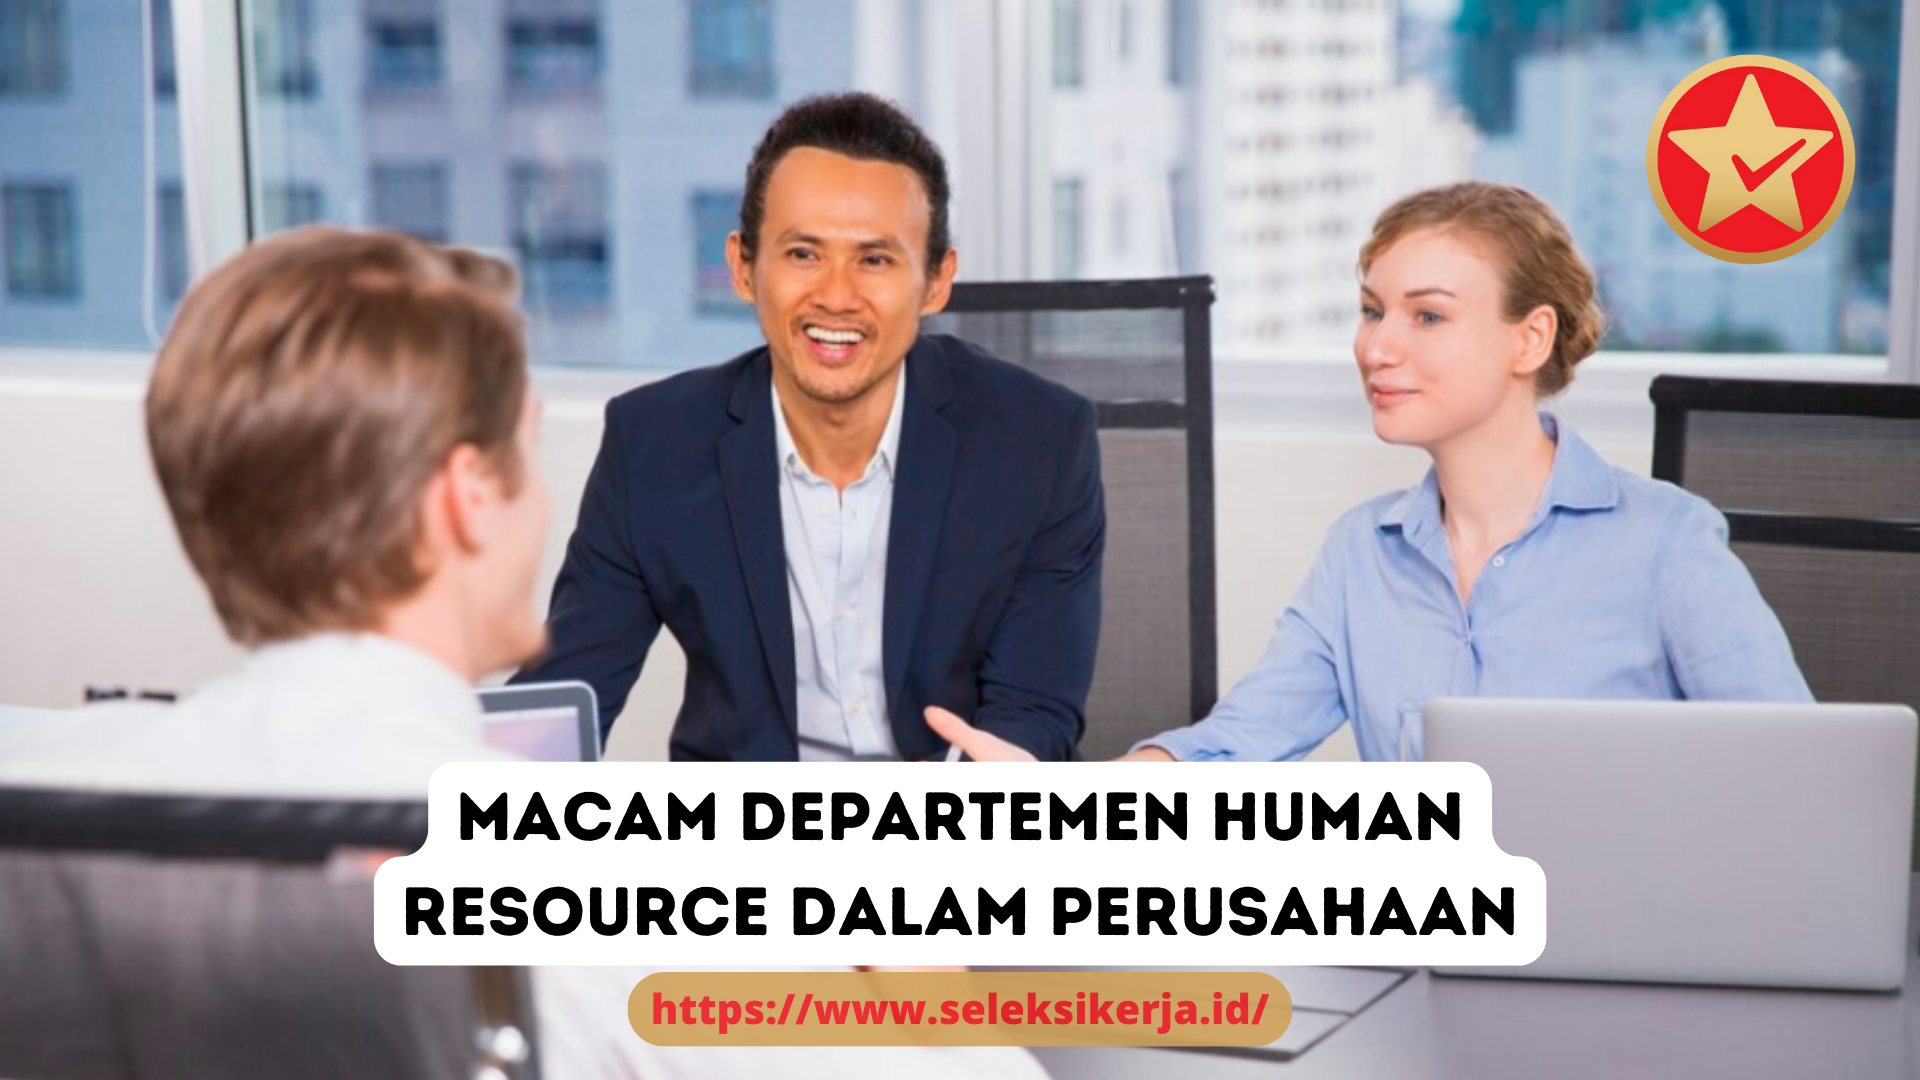 5 Macam Departemen Human Resource dalam Perusahaan